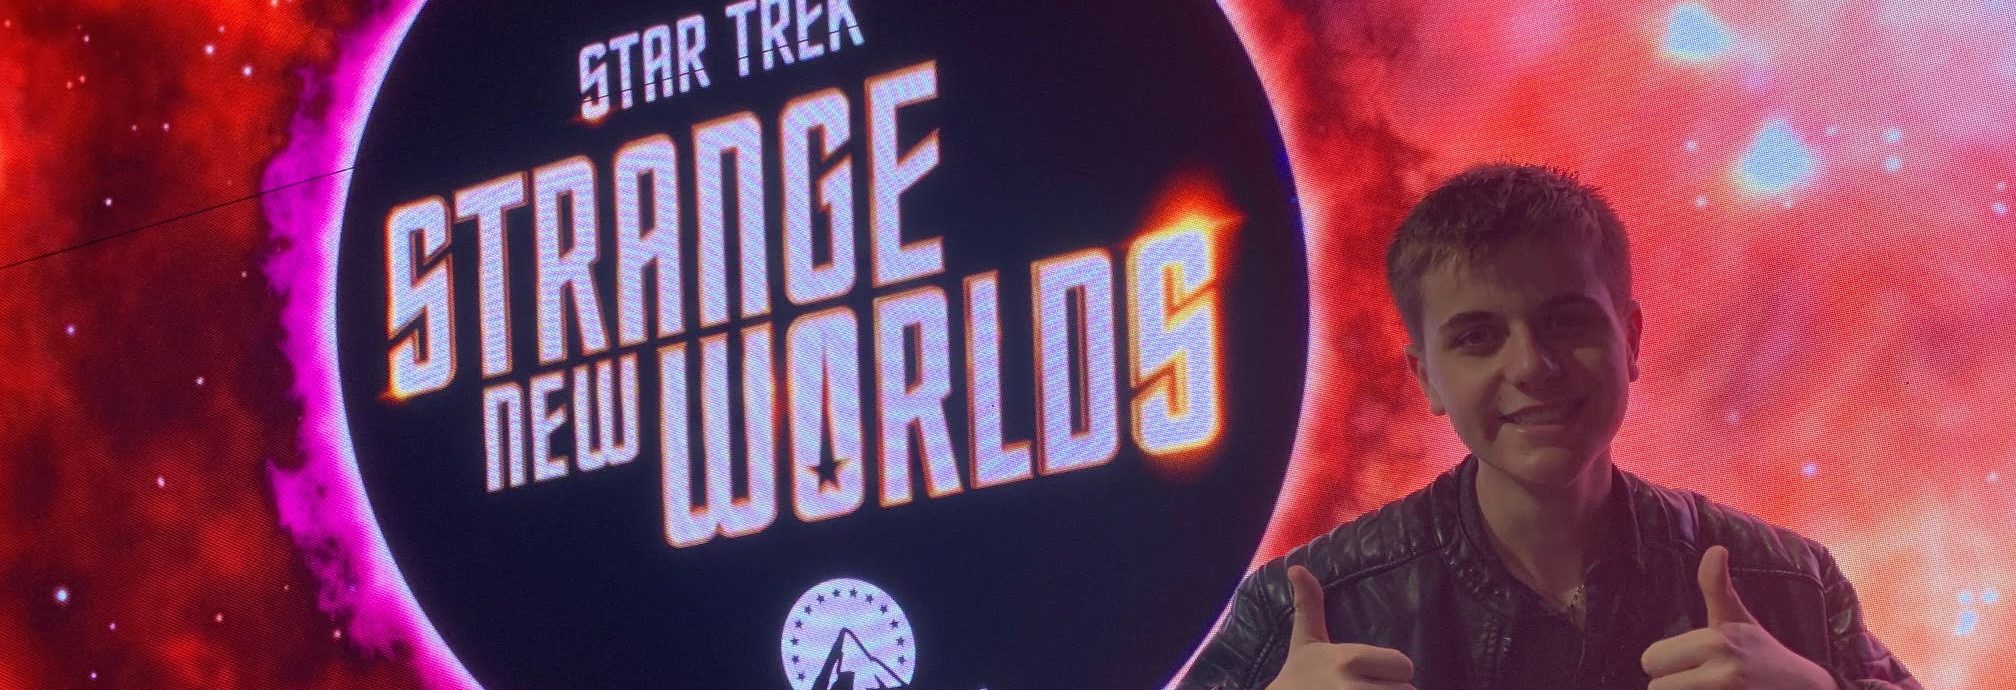 Con at the Star Trek Strange New Worlds S2 Premiere